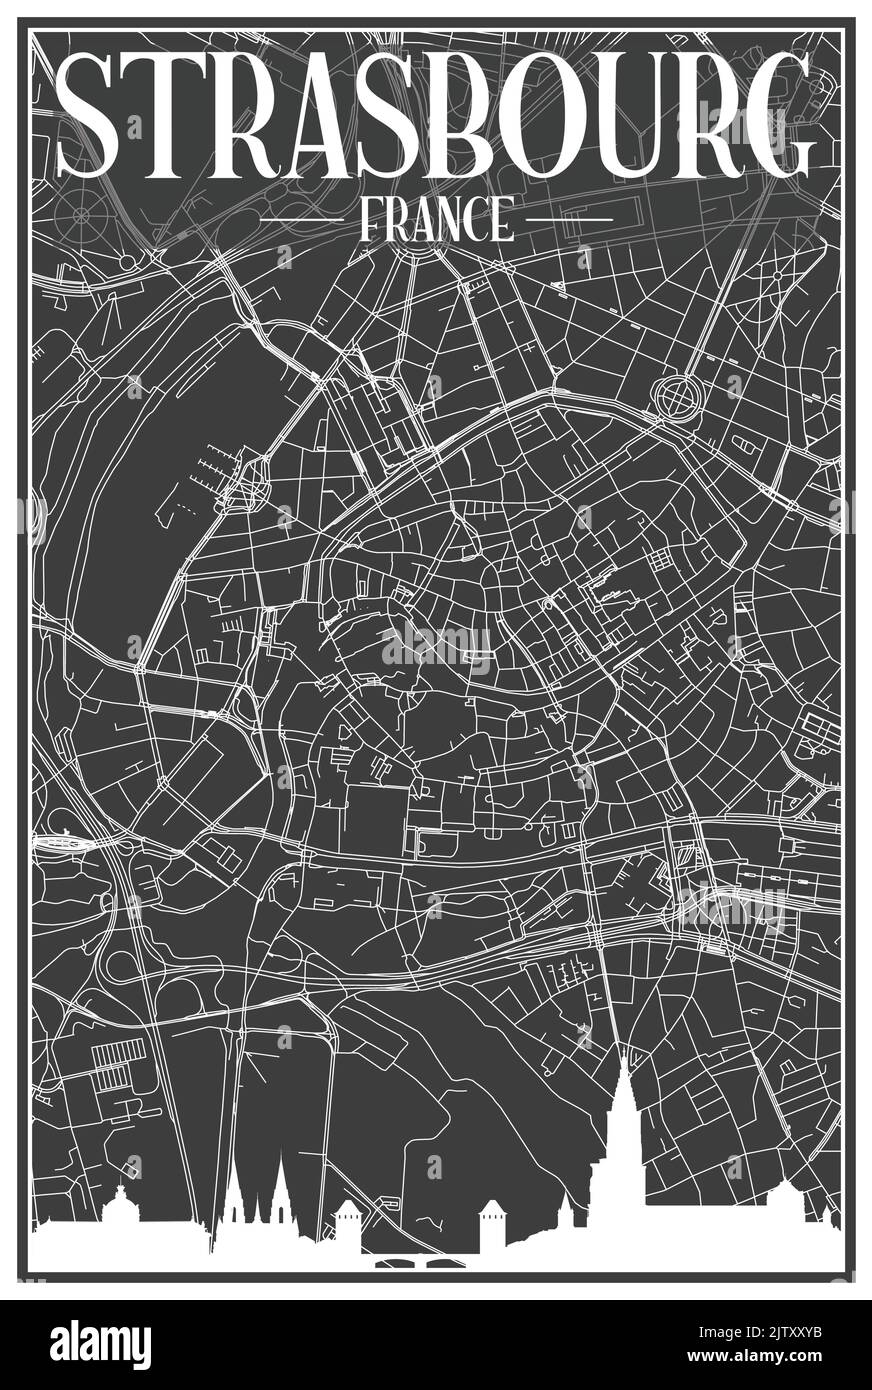 Impression sombre affiche de la ville avec vue panoramique et rues dessinées à la main sur fond gris foncé du centre-ville DE STRASBOURG, FRANCE Illustration de Vecteur